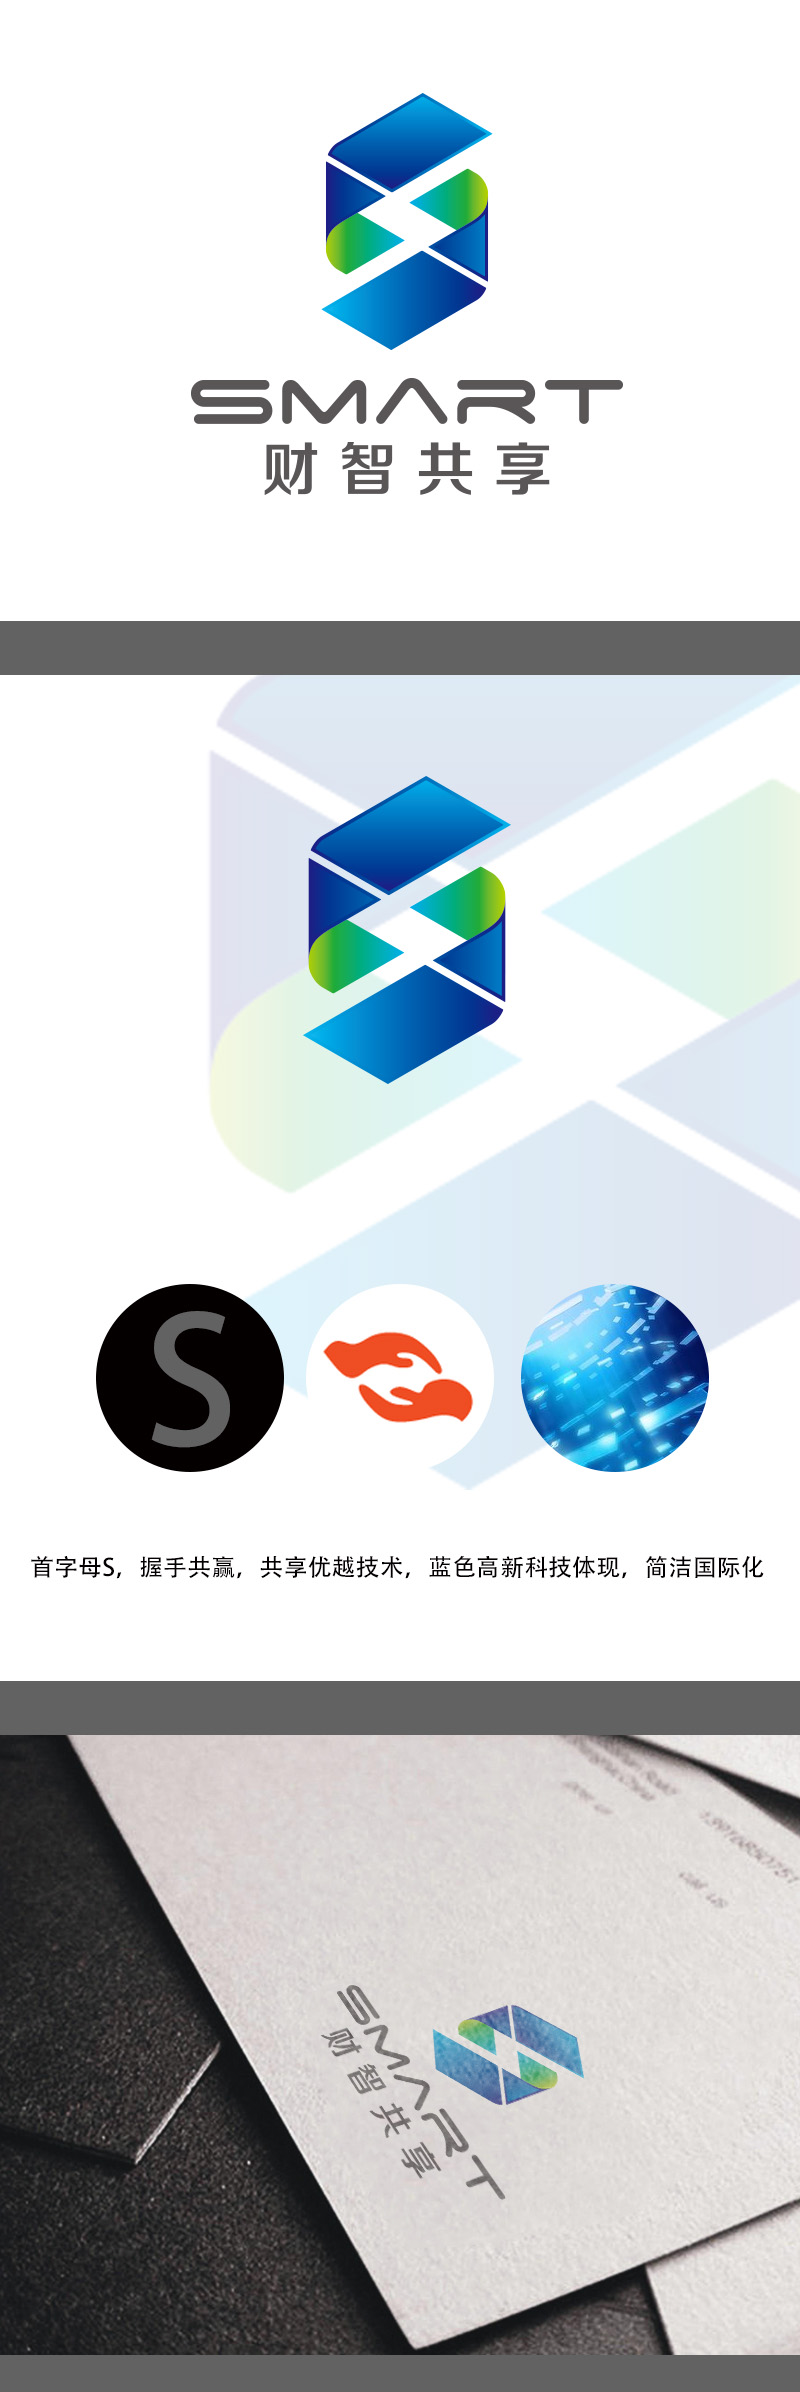 黄安悦的财智共享（北京）技术服务有限公司logo设计